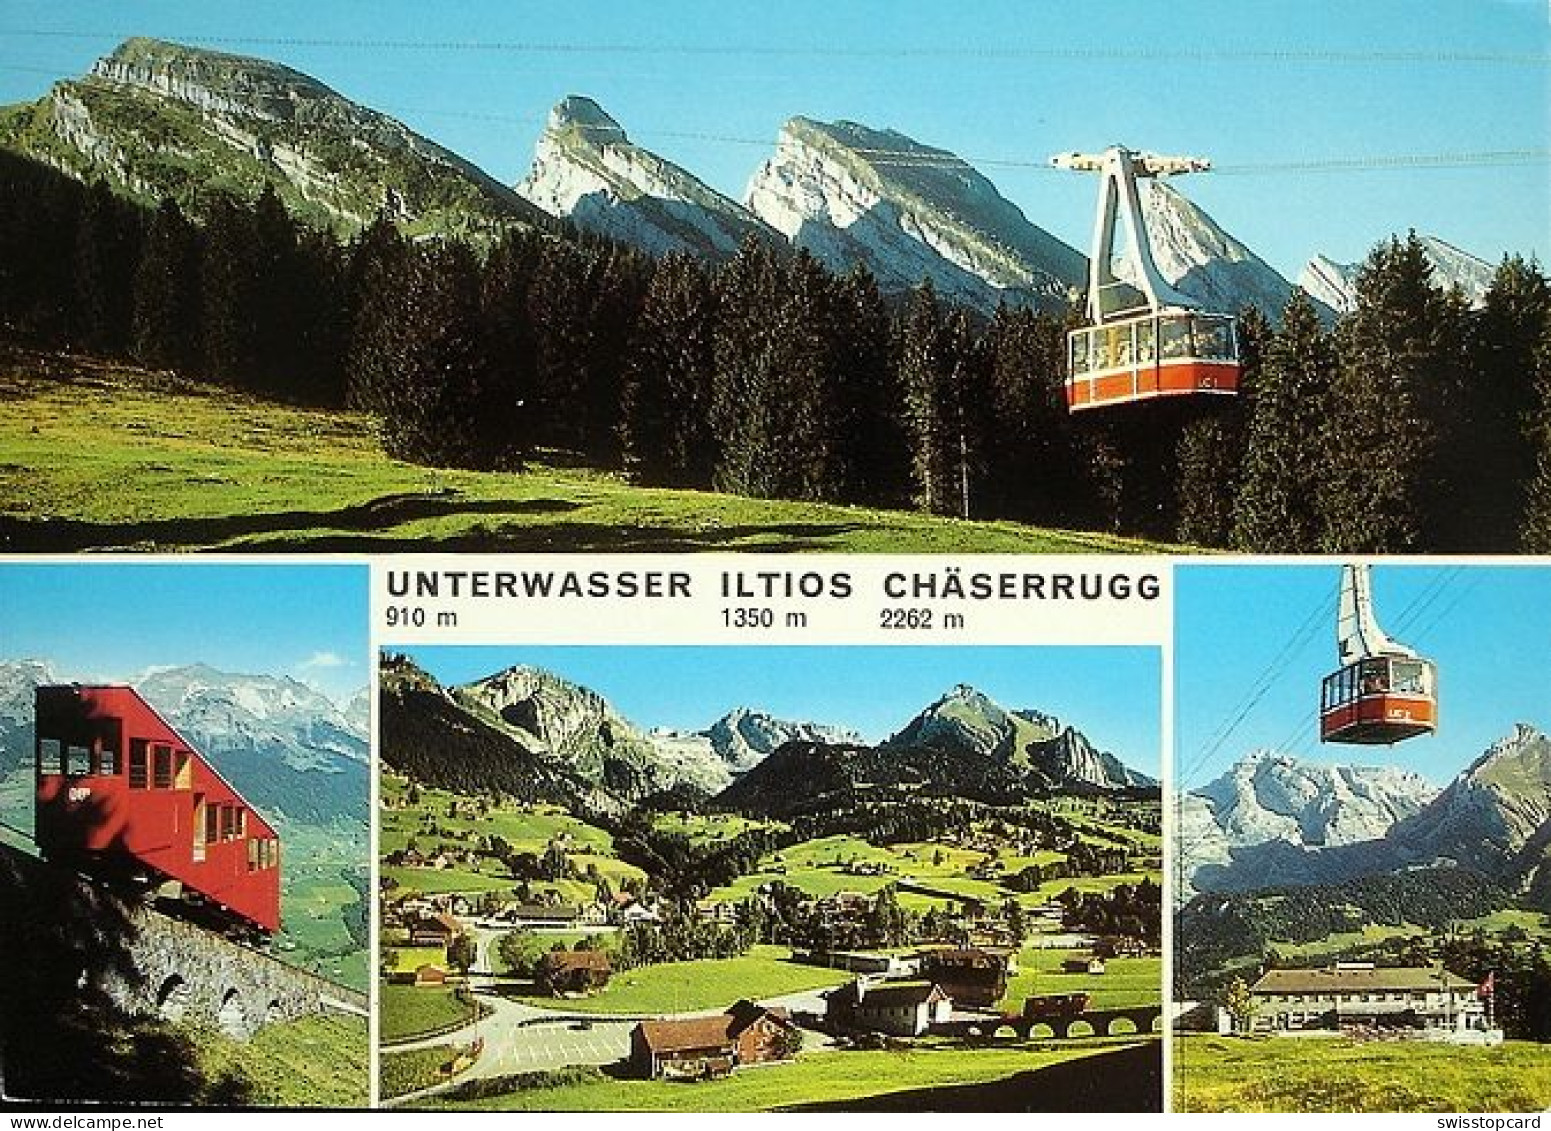 UNTERWASSER ILTIOS CHÄSERRUGG Standseilbahn, Luftseilbahn - Wildhaus-Alt Sankt Johann